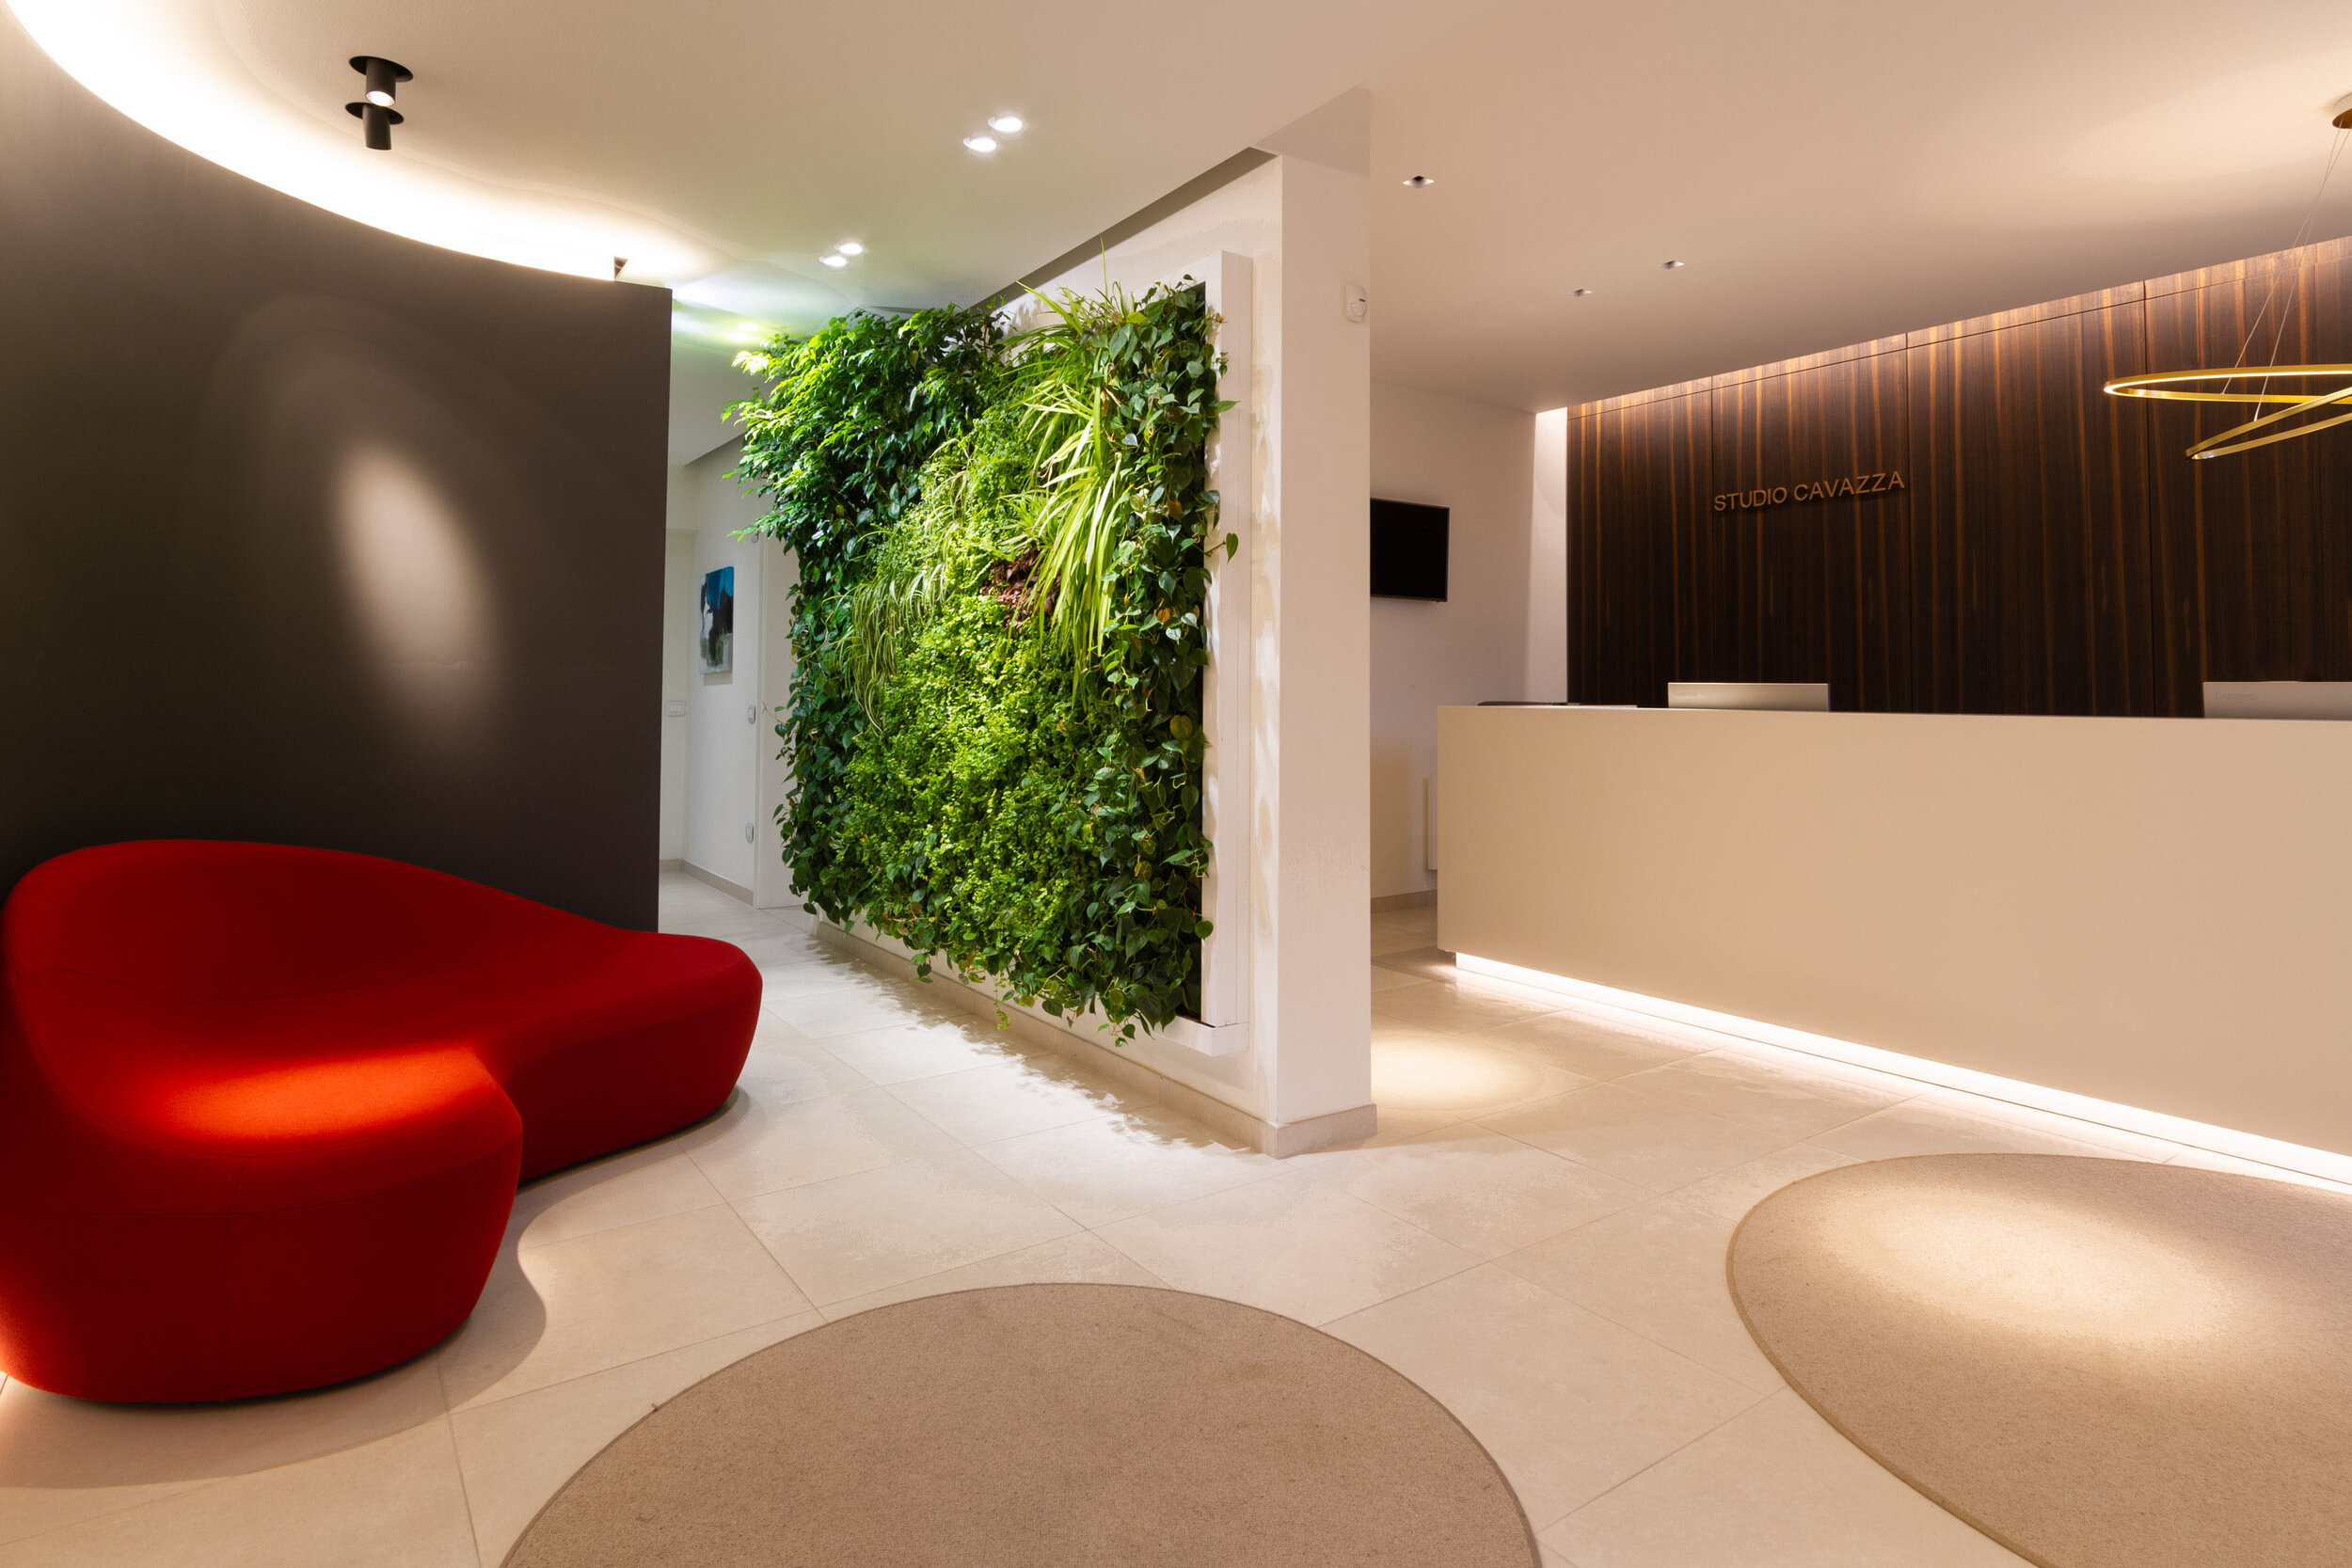 studio-cavazza-garden-vertical-wall-green-sundar-italia-002.JPG